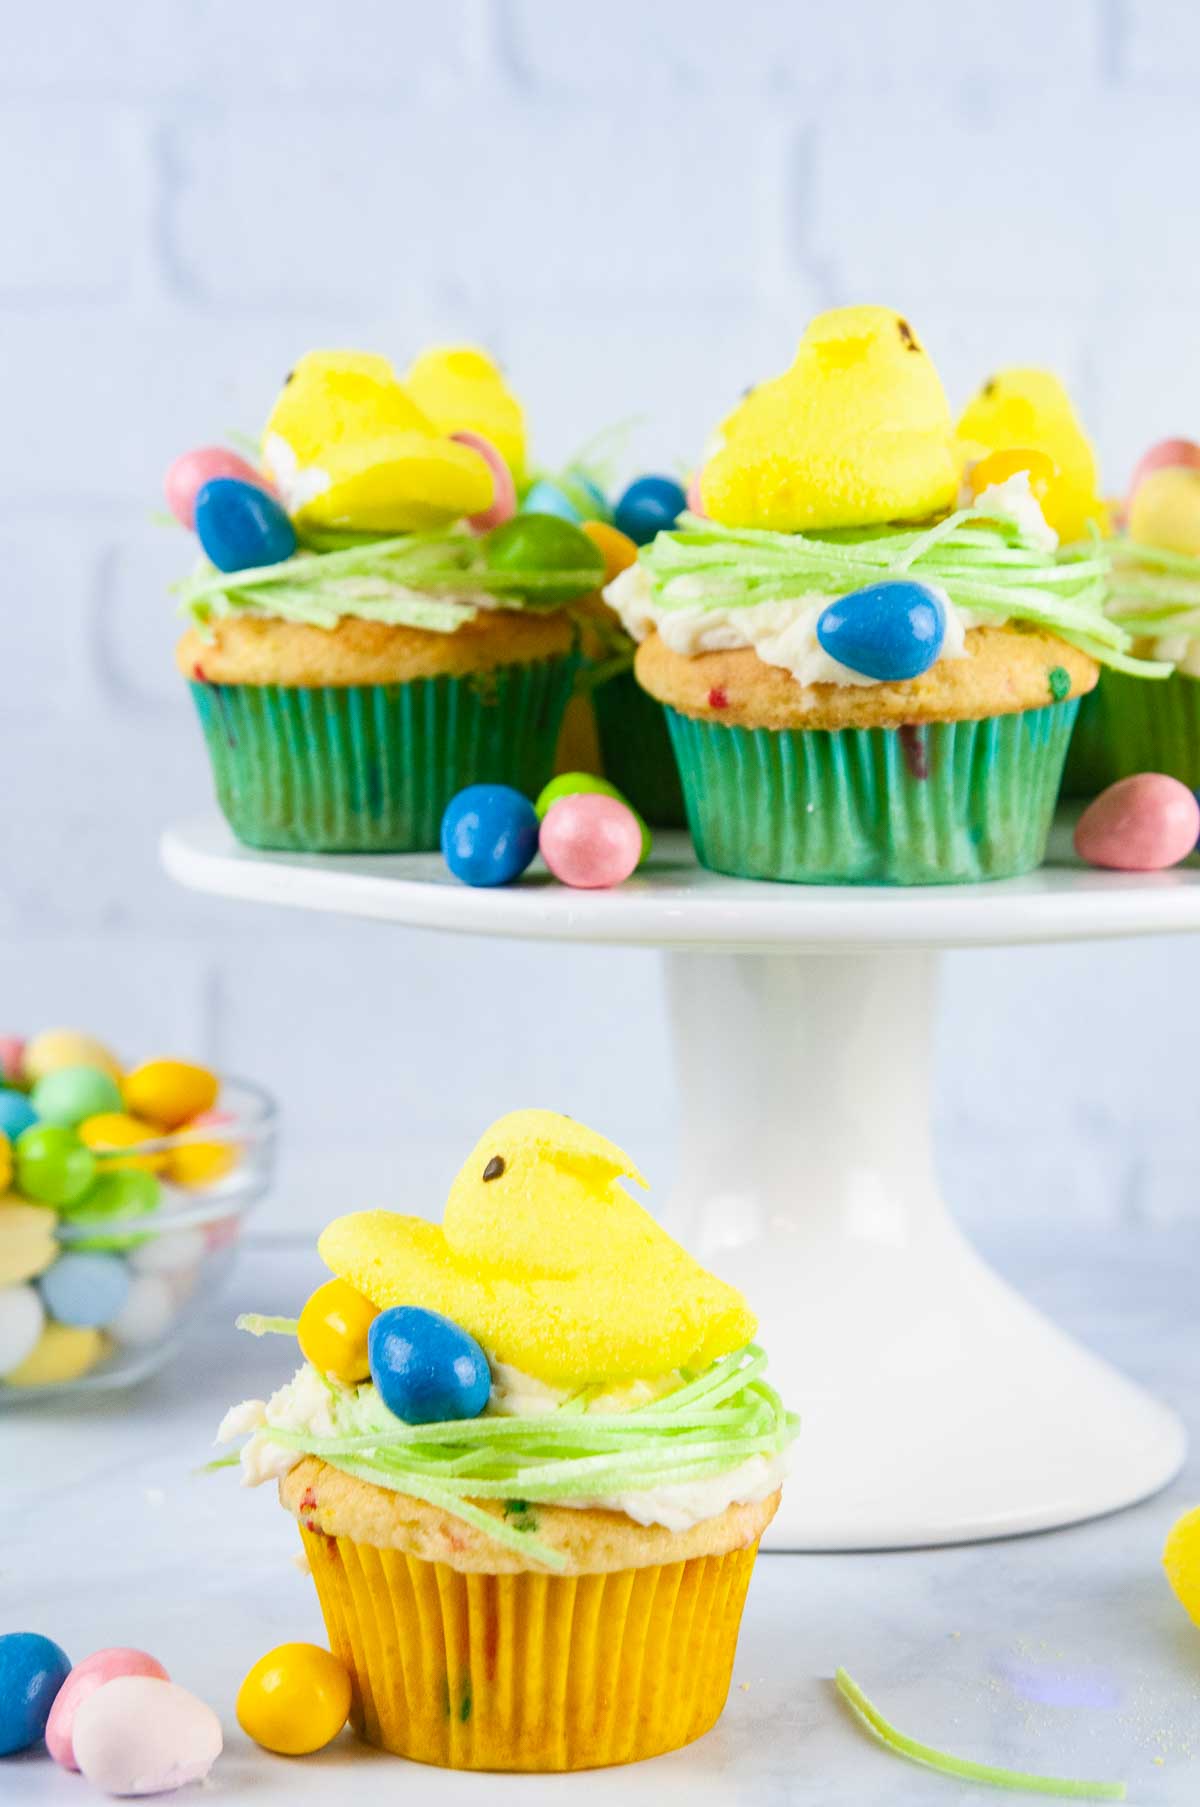 https://www.seasonedsprinkles.com/wp-content/uploads/2021/03/Easter-Peeps-Cupcakes-Egg-Nest-Cupcakes-12.jpg